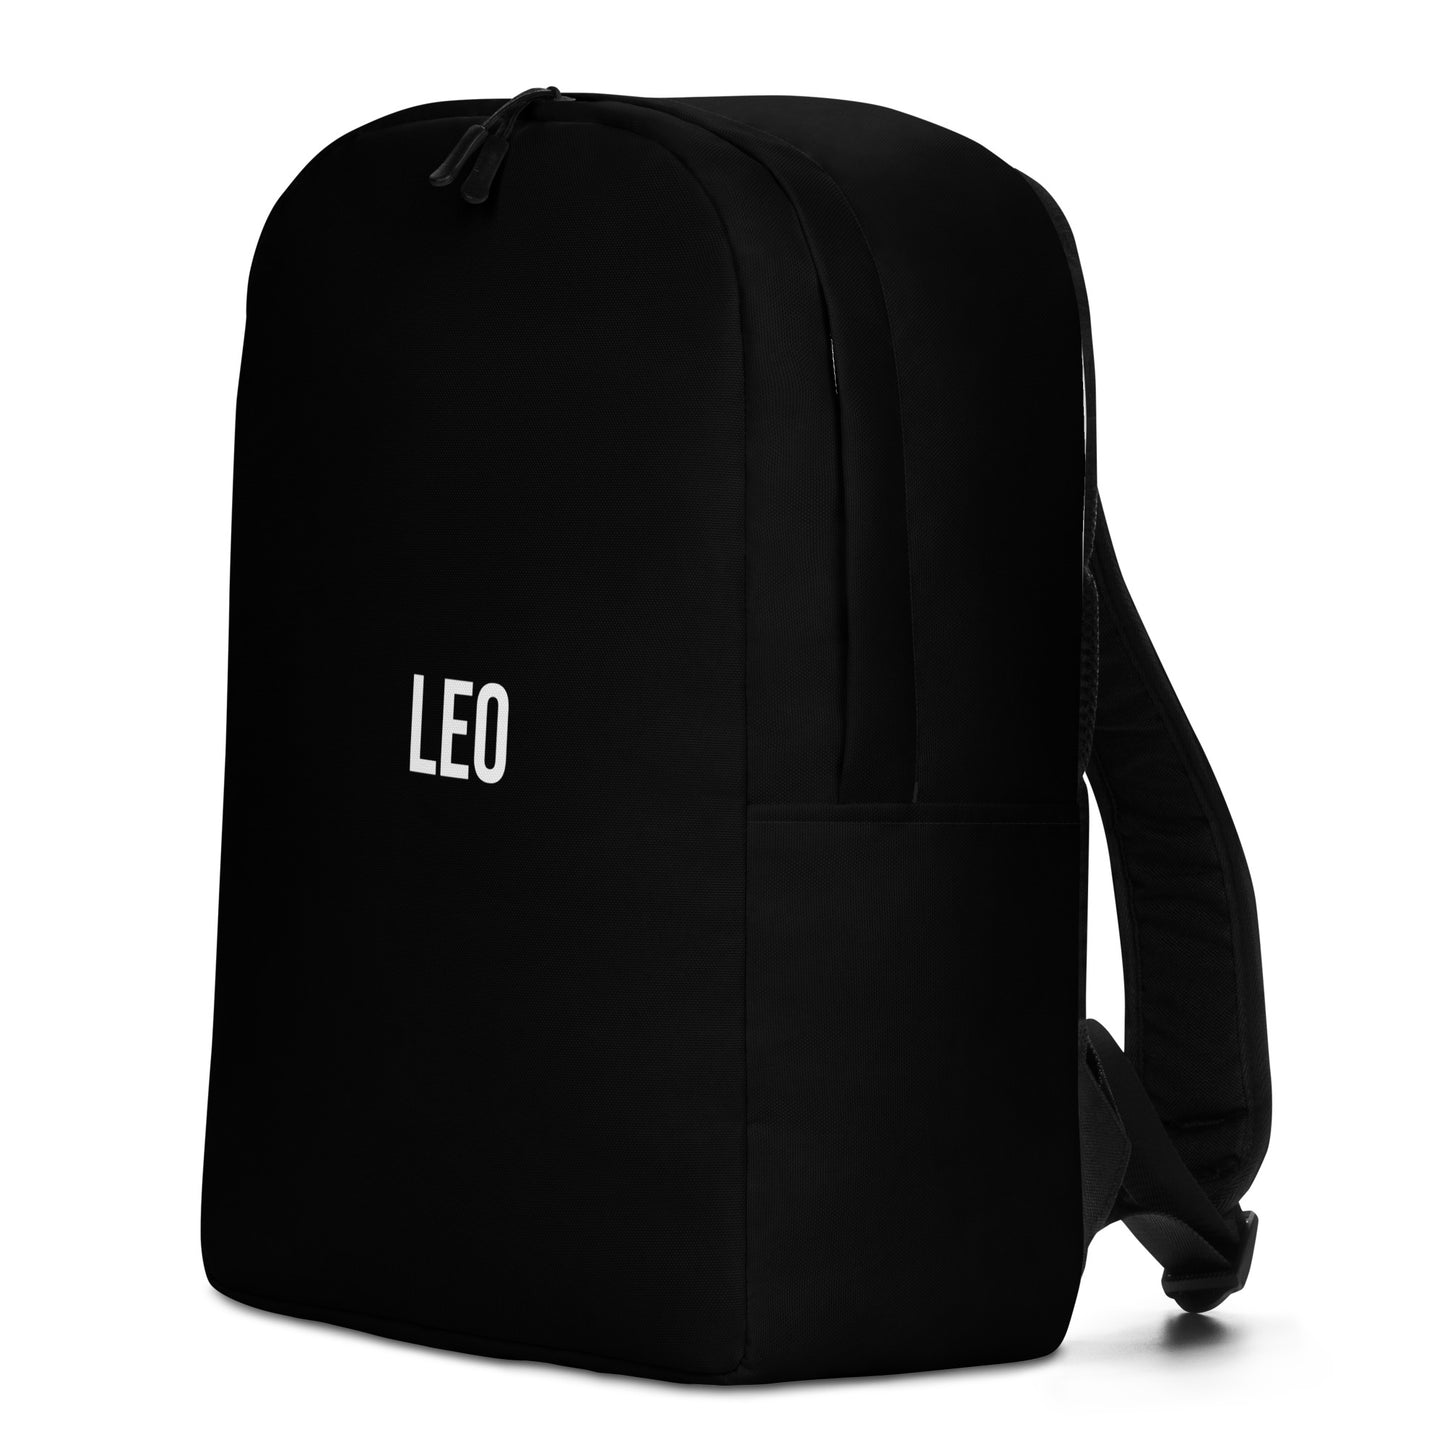 Leo Backpack Black